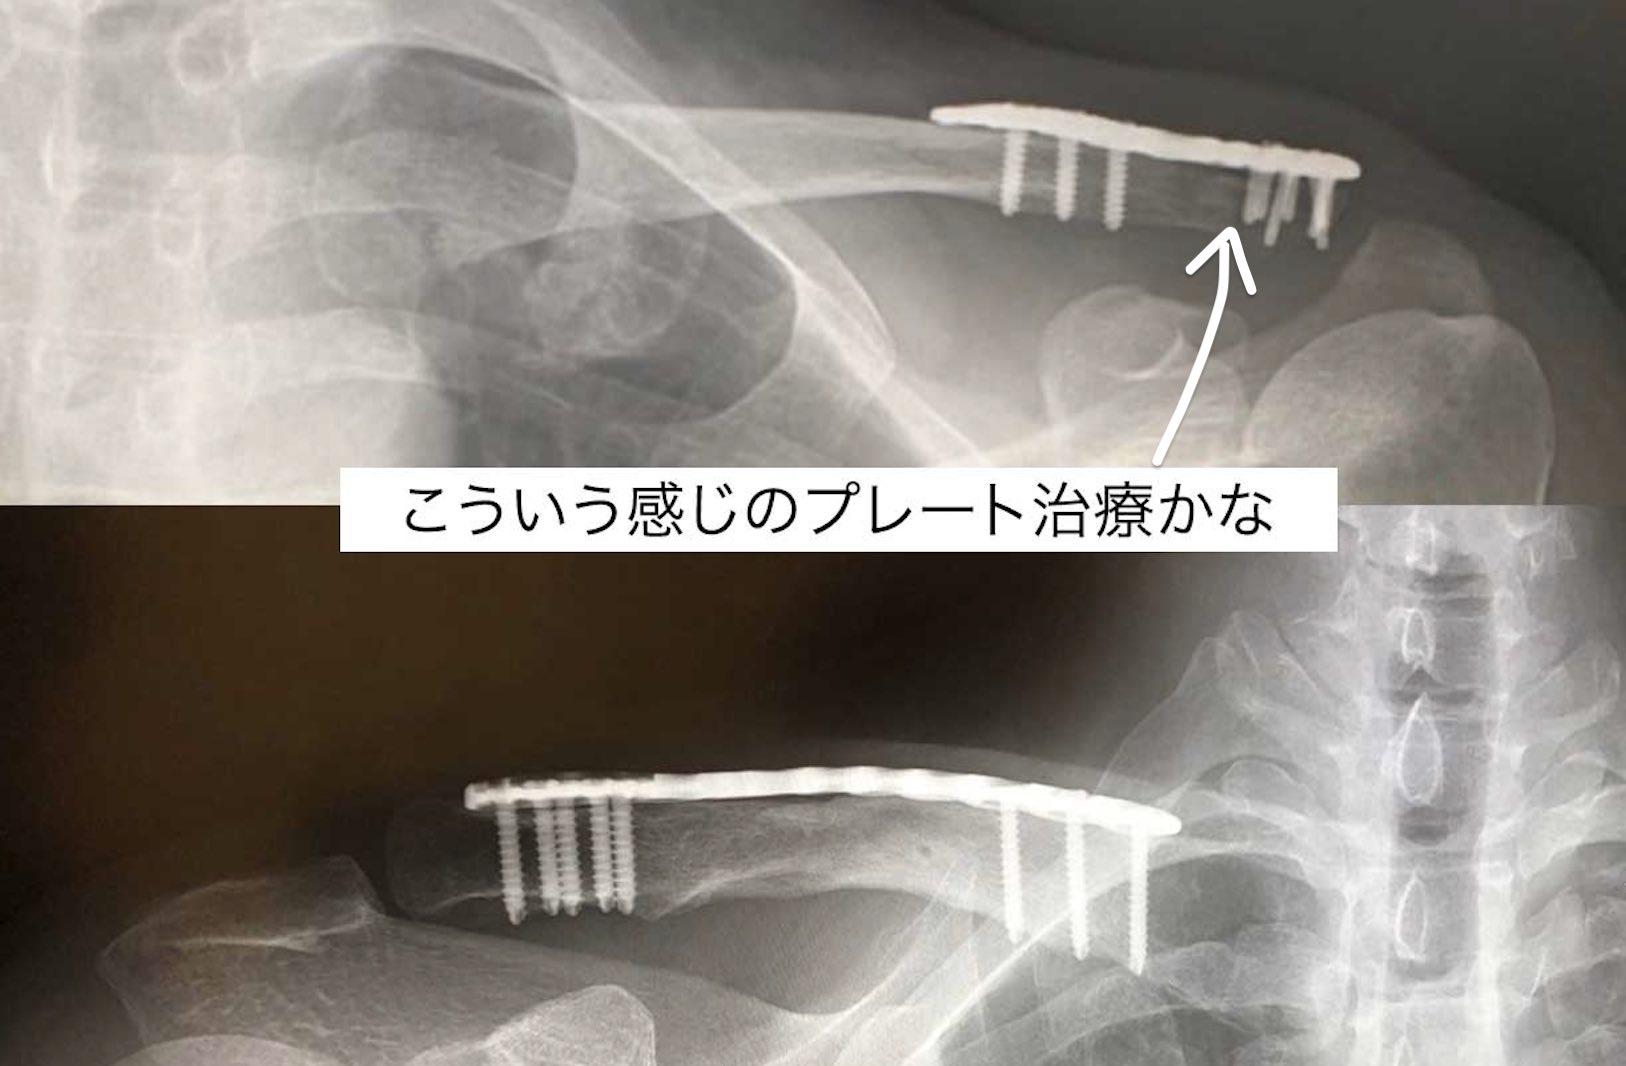 藤田菜七子の落馬と鎖骨骨折の治療法